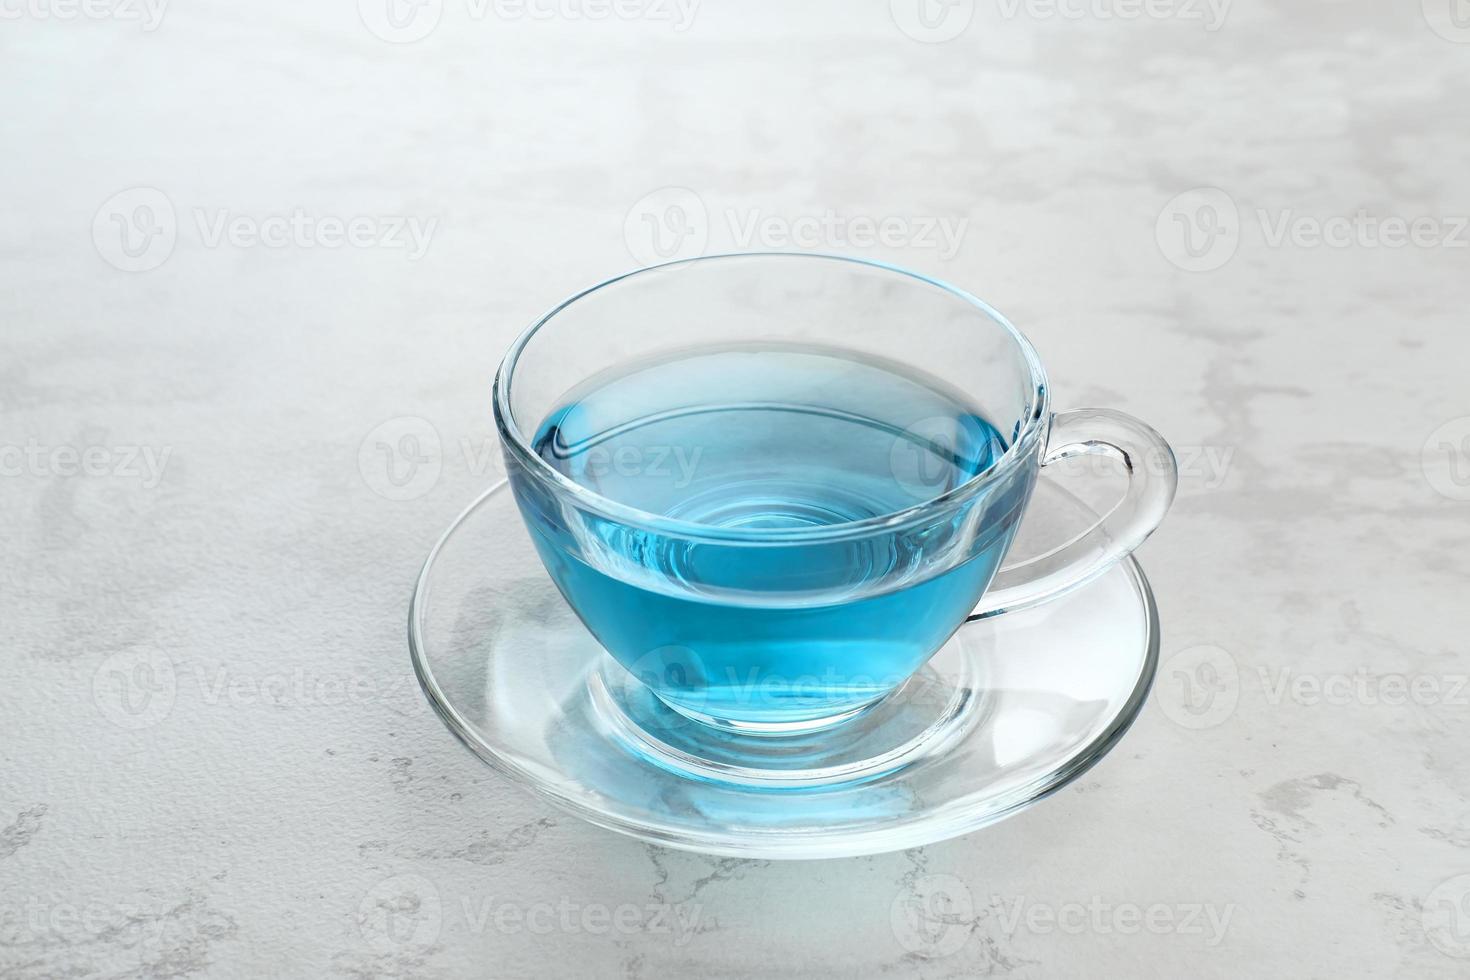 de telang, vlinderbloemthee of blauwe thee is kruidenthee gemaakt van het kruid of de infusie van de clitoria ternatea plantbloem. selectieve aandacht. foto